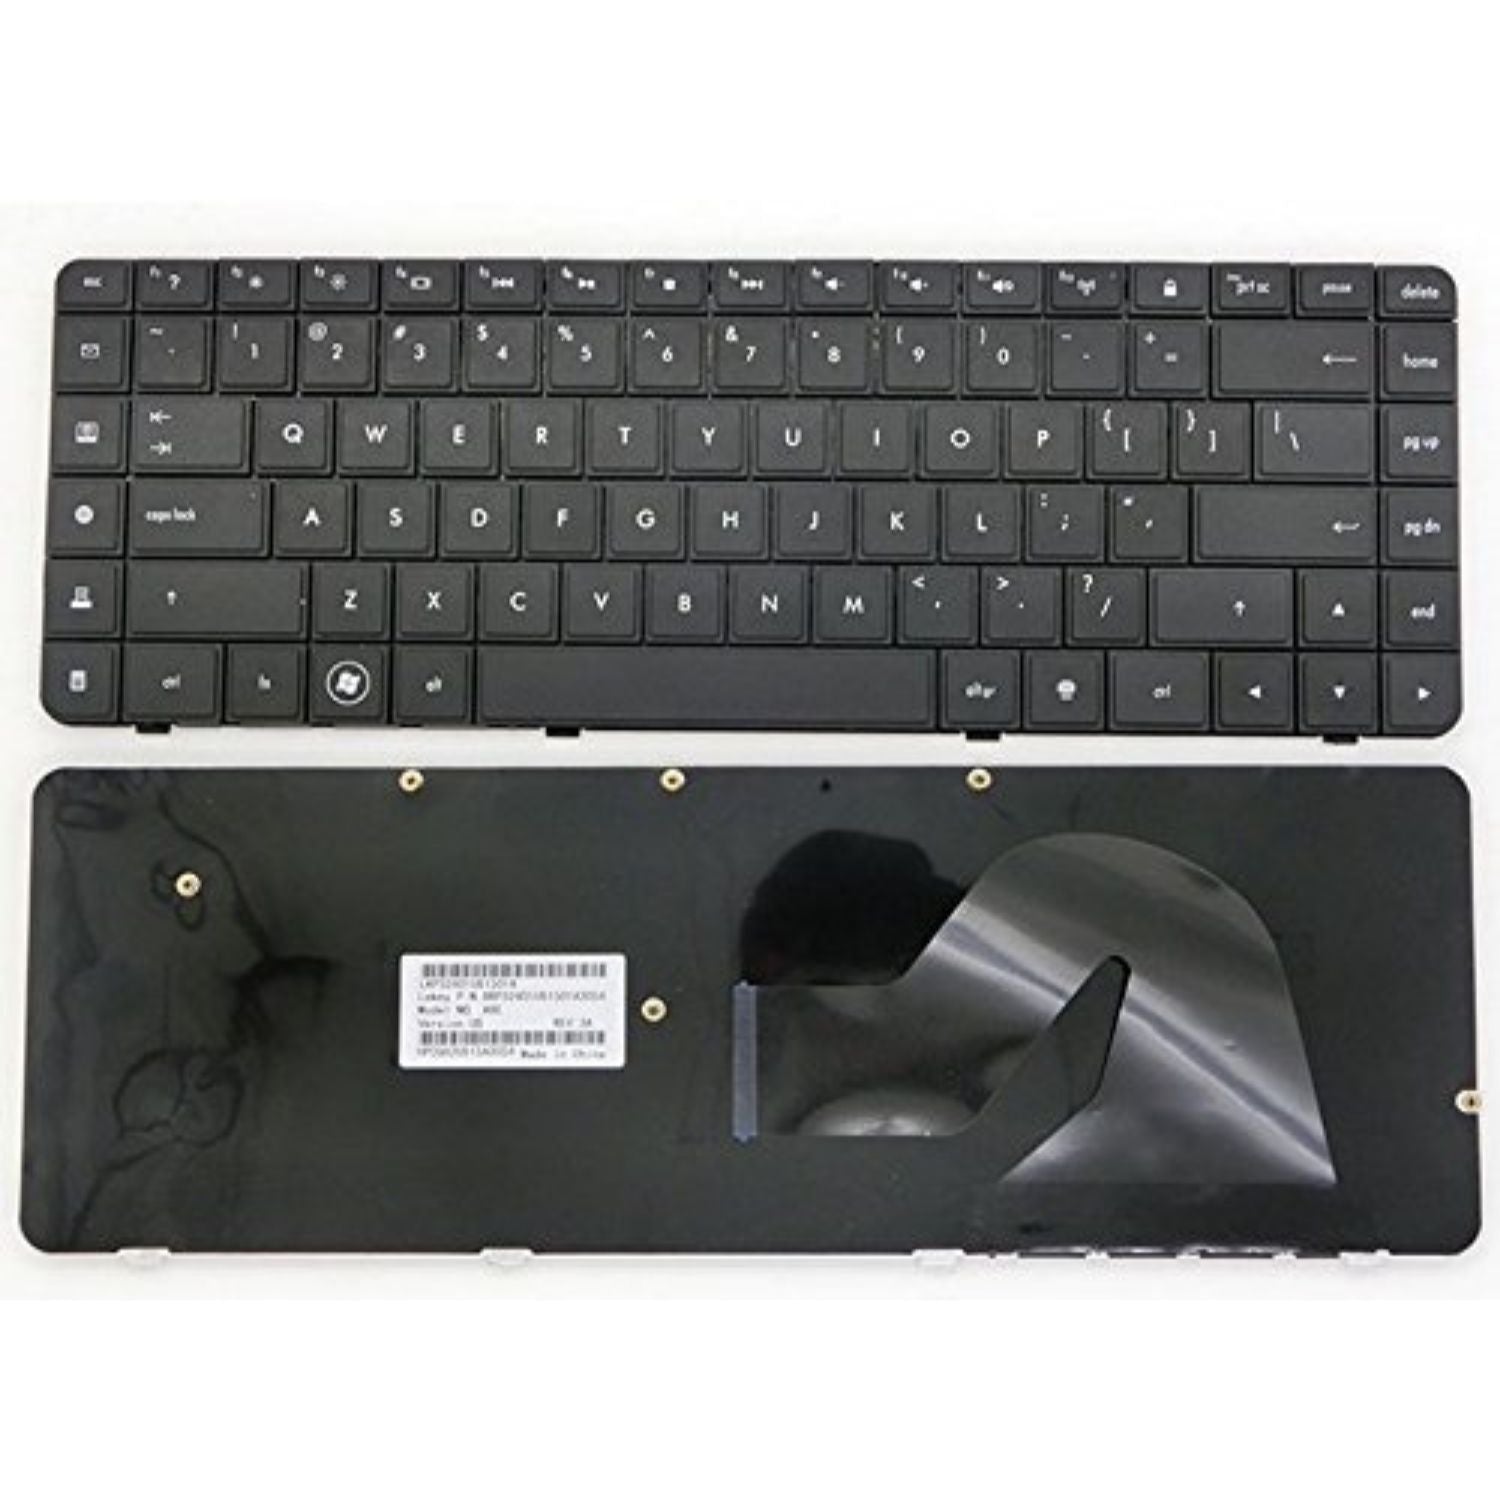 HP Laptop Keyboard For 606685-001 Compaq Presario CQ62 Compaq G62 AEAX6U00210 9Z.N4SSQ.001 595199-001 V112346AS1 AEAX6U00110 588976-001 AEAX6U00310